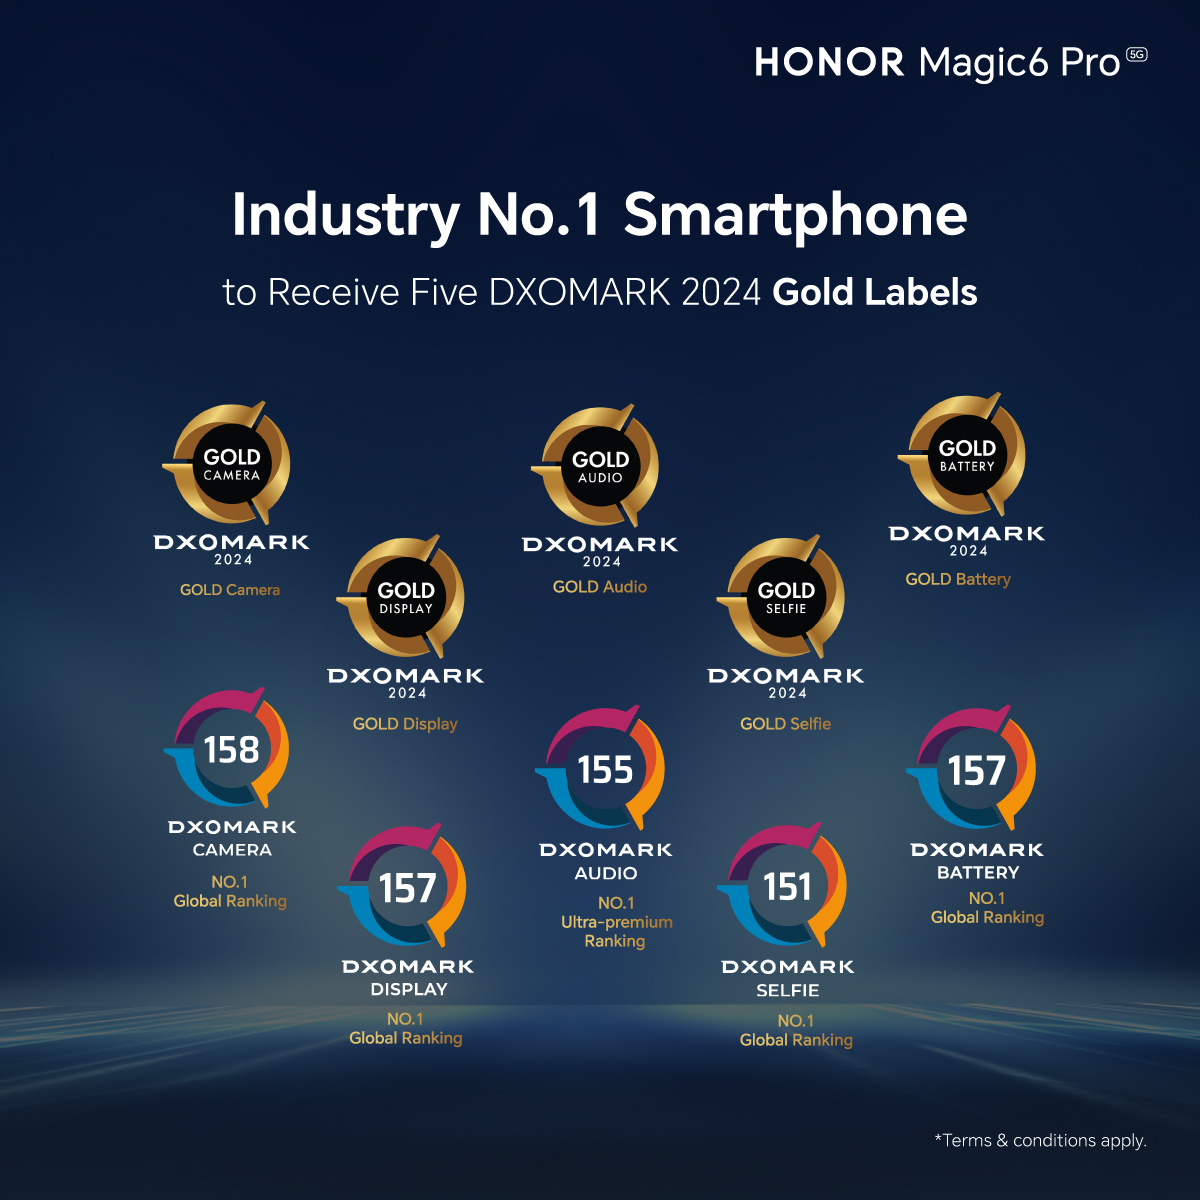 HONOR Magic6 Pro 3月28日全马开售，首销送总值高达1,197令吉礼品 16